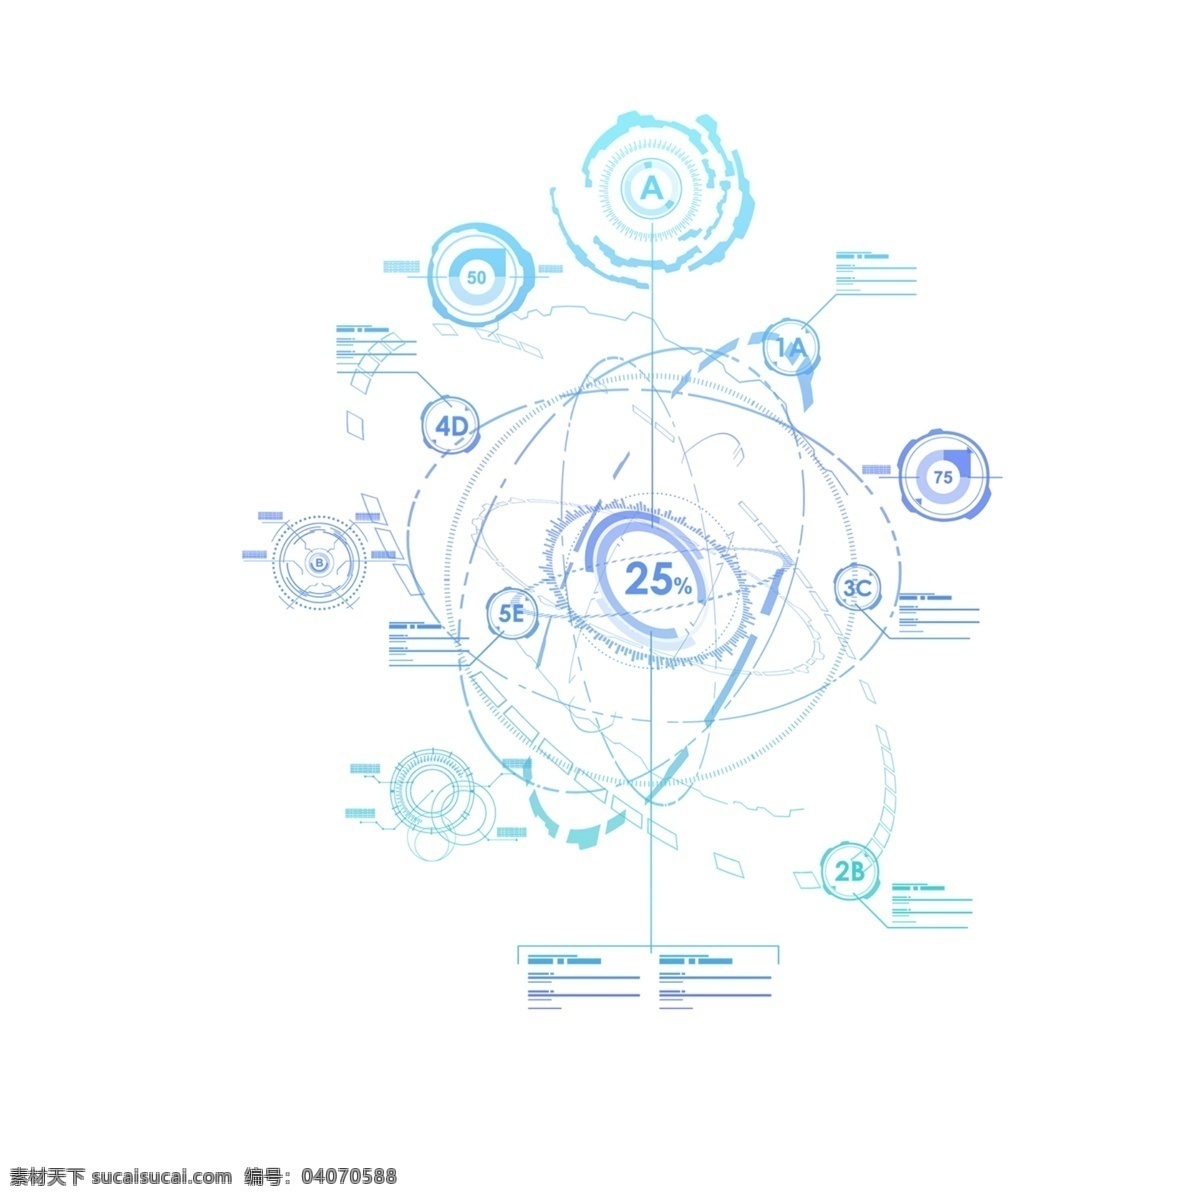 蓝色 炫 酷 科技 装饰 图案 环形 卡通手绘 抽象立体 创意创新 装饰图案 高科技 抽象效果 科技感 炫酷 星球